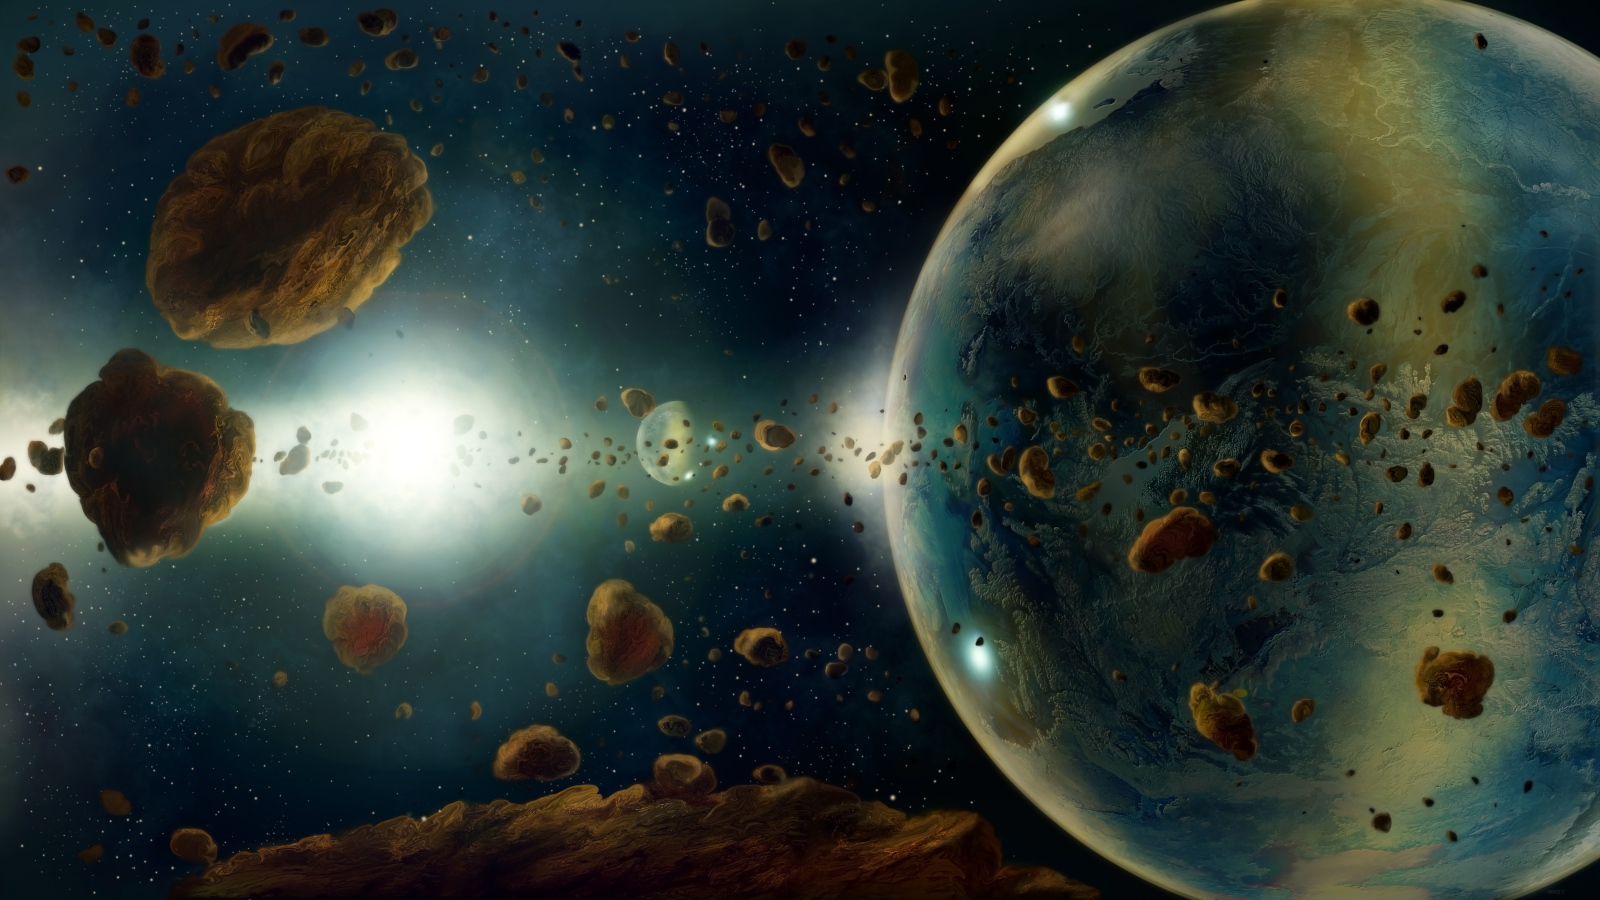 Большие астероиды в космосе  с планетами